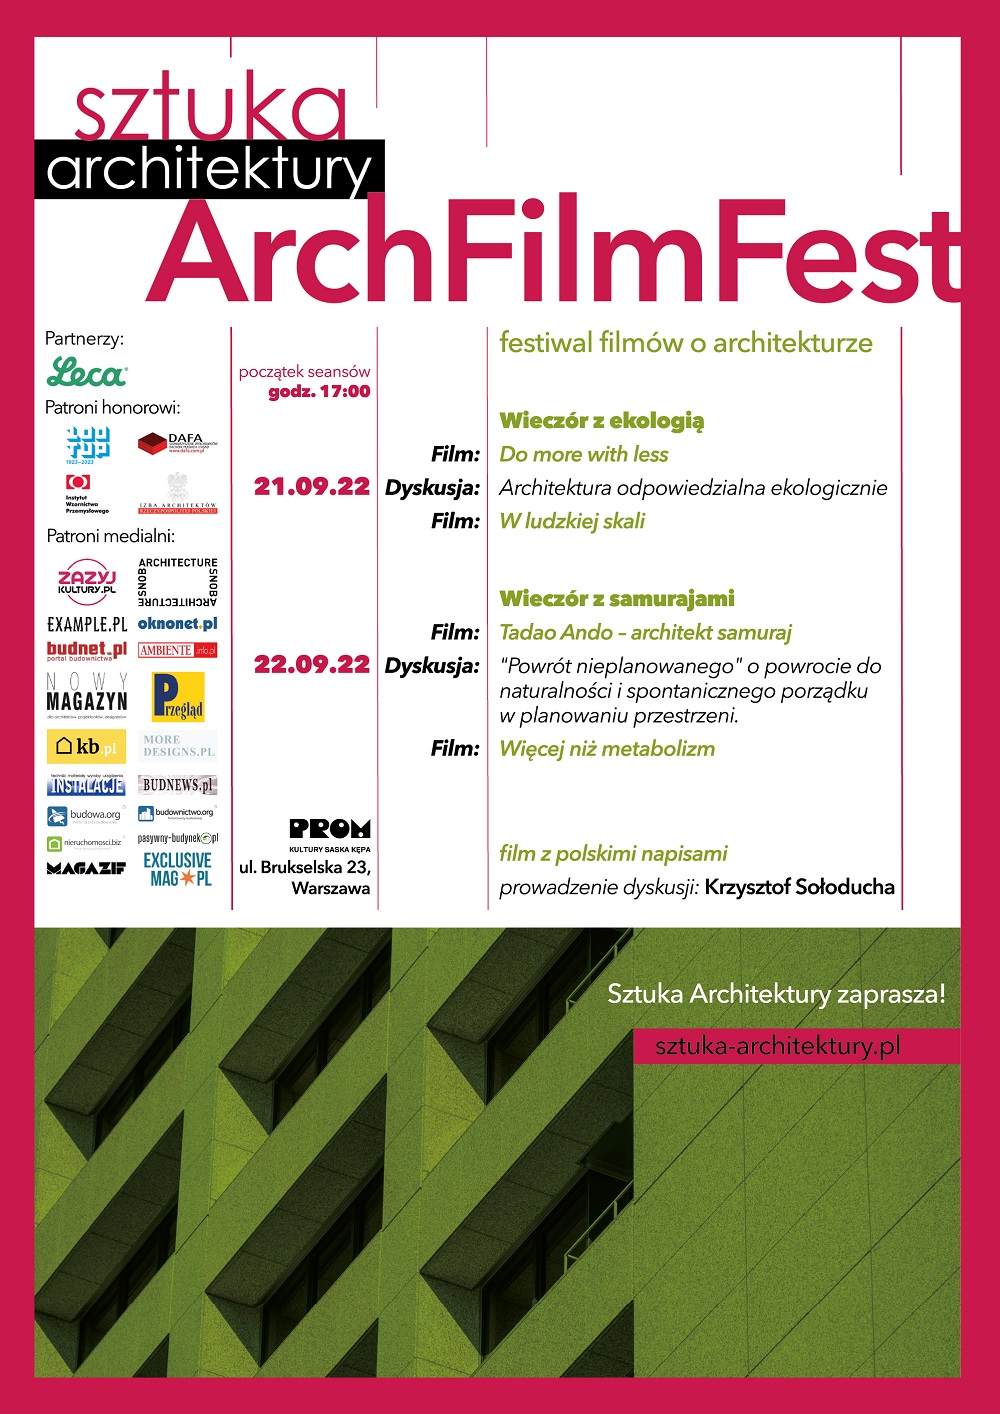 ArchFilmFest""